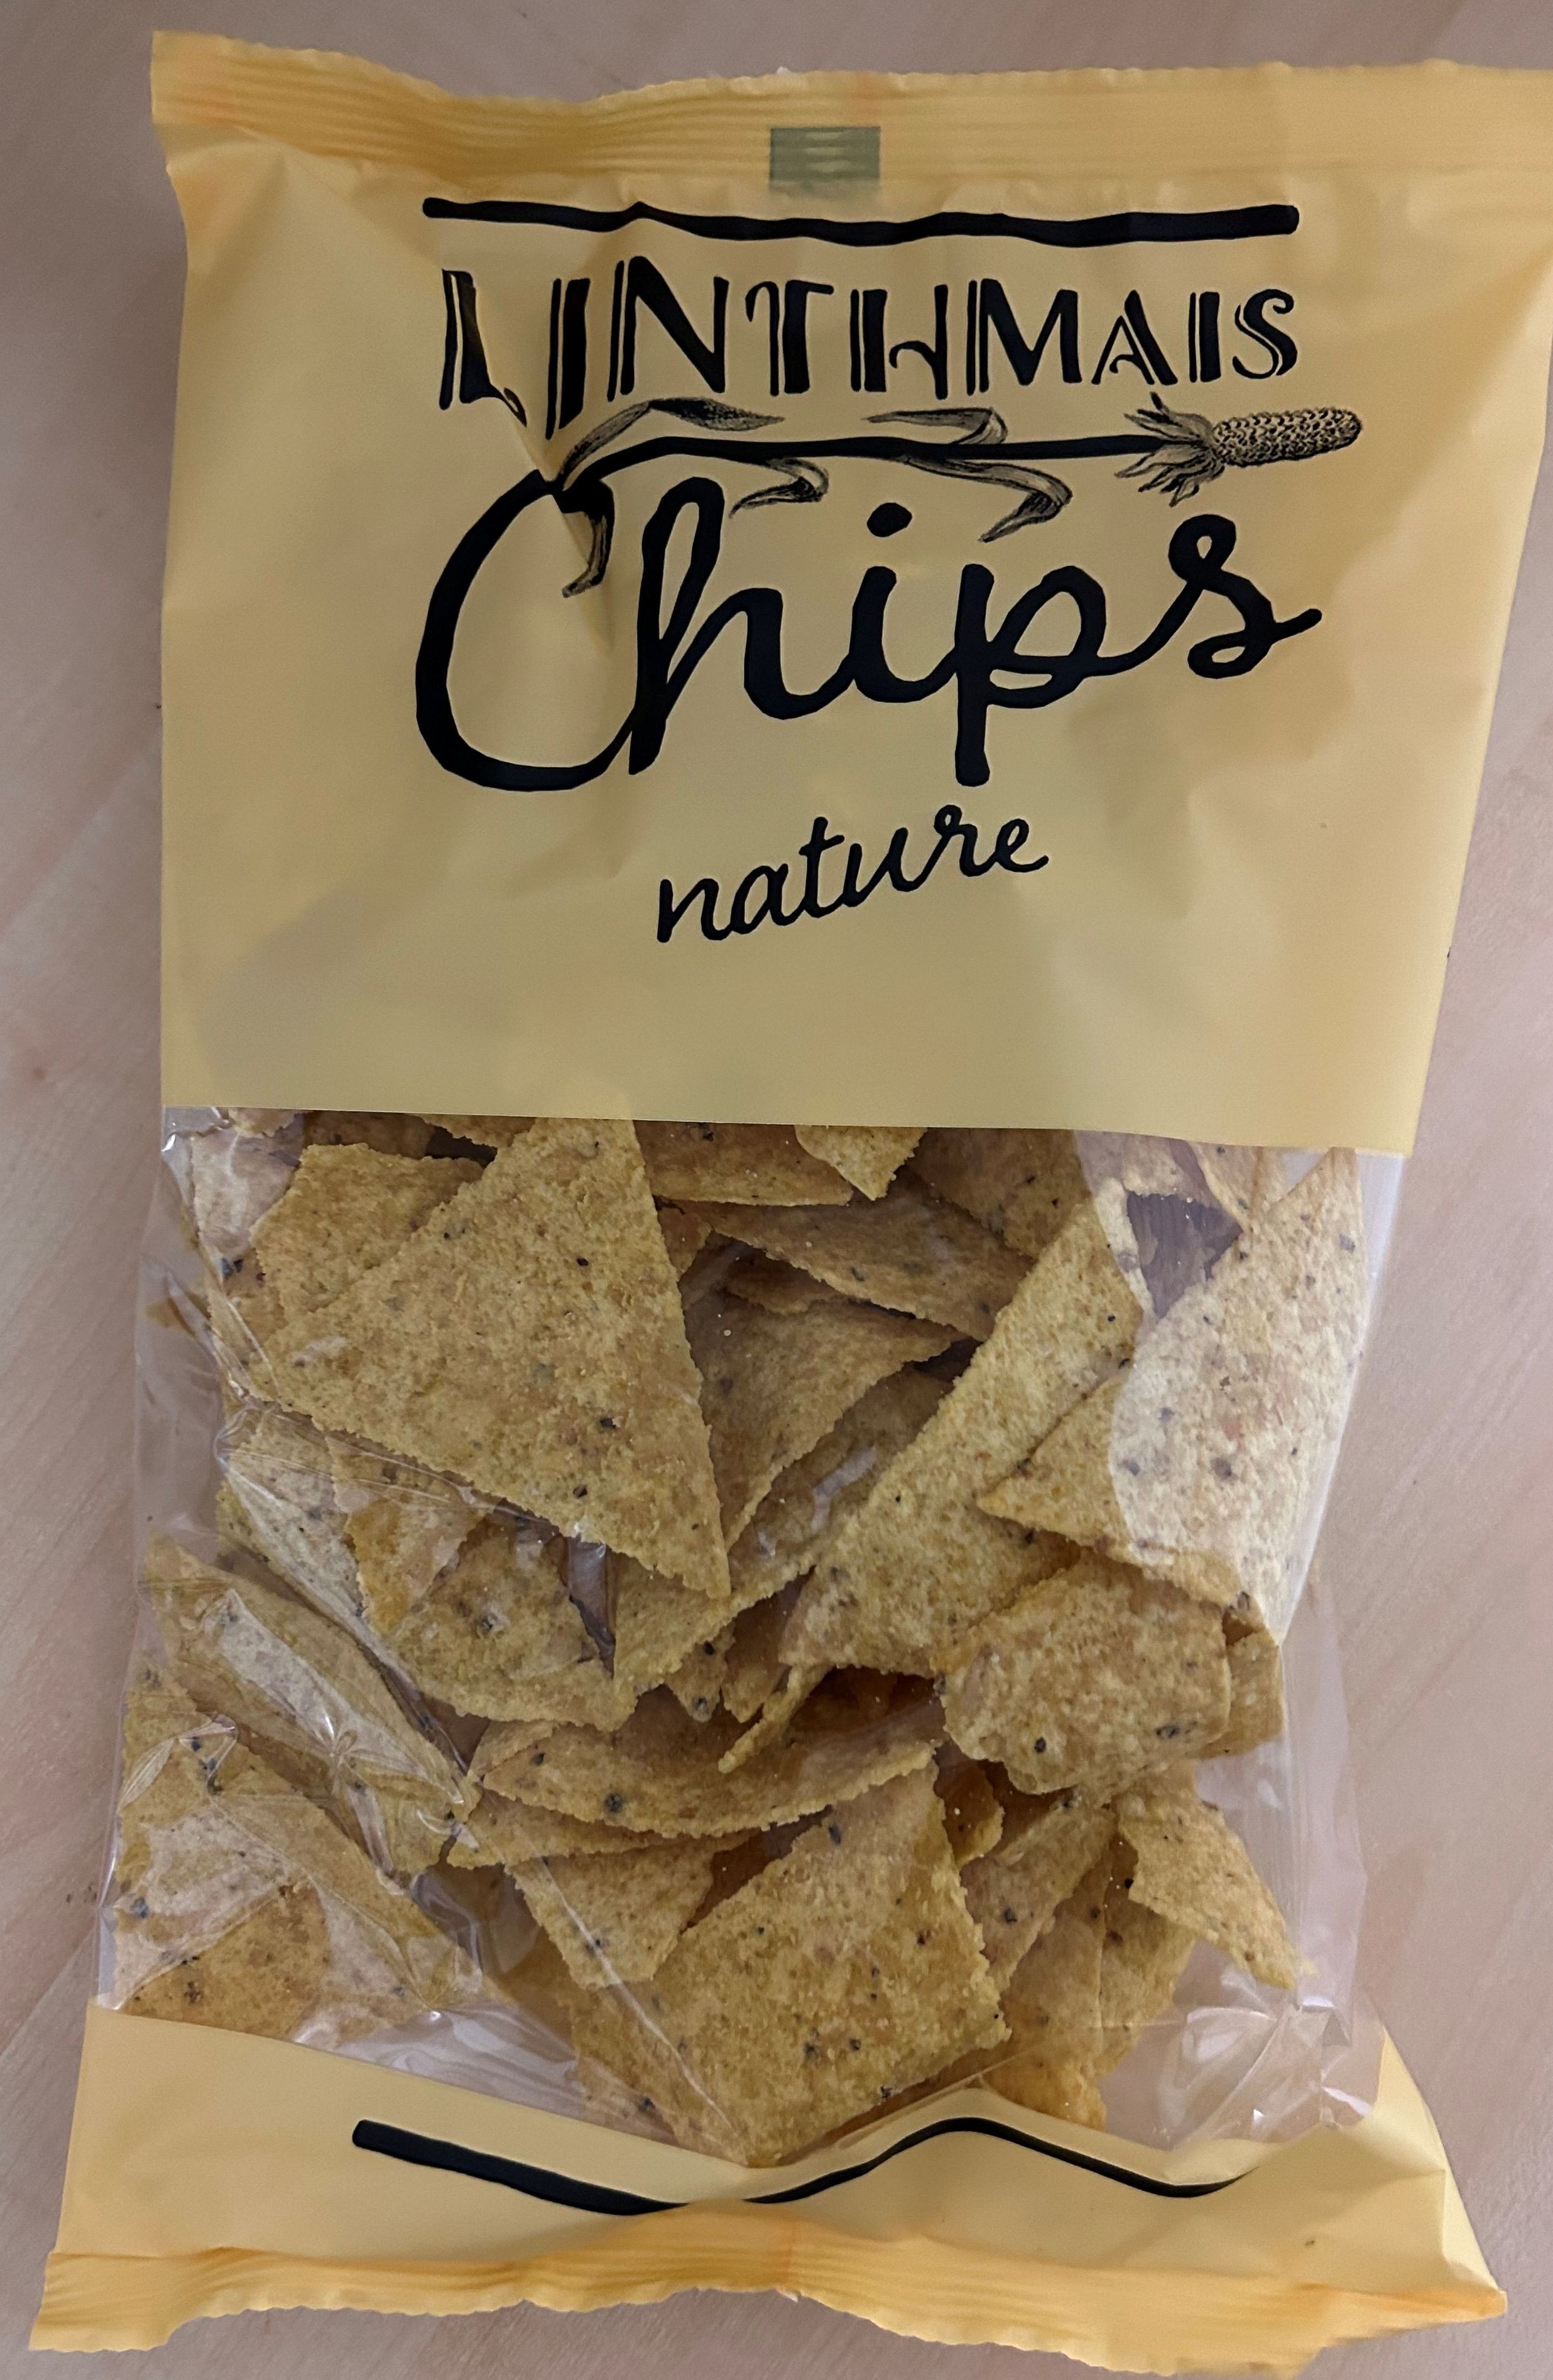 Linthmais Chips Nature